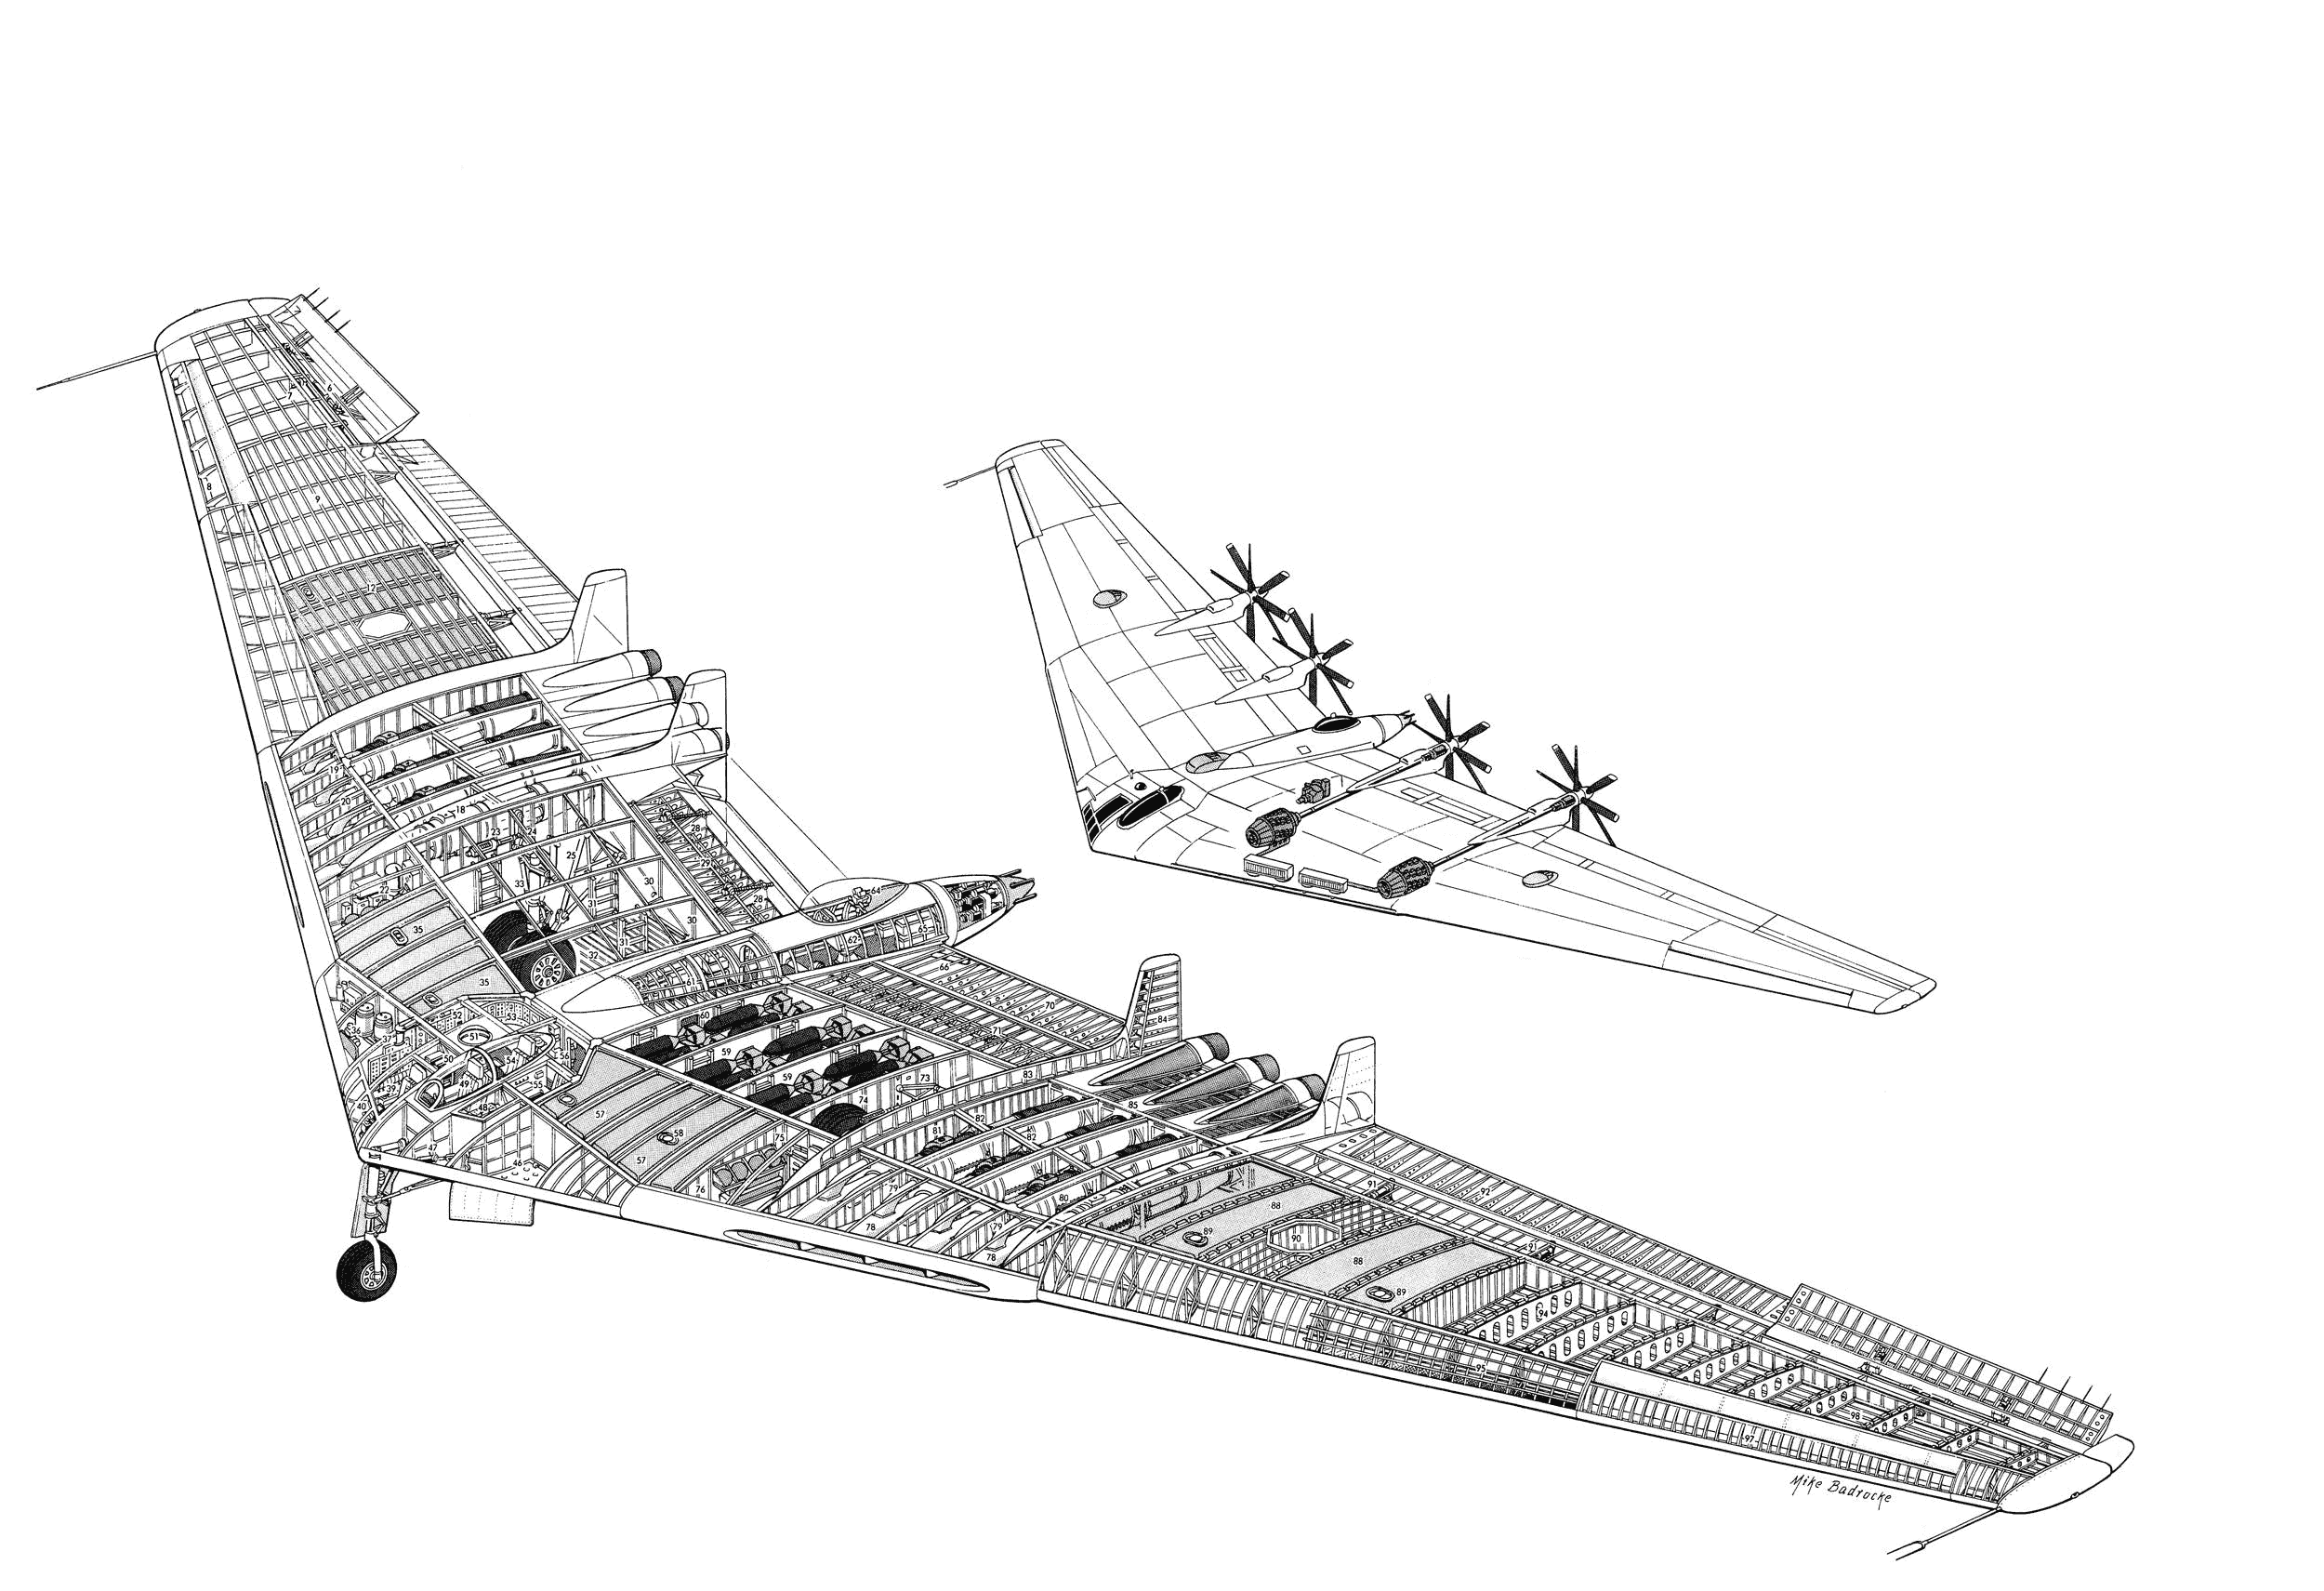 Northrop YB-49 cutaway drawing